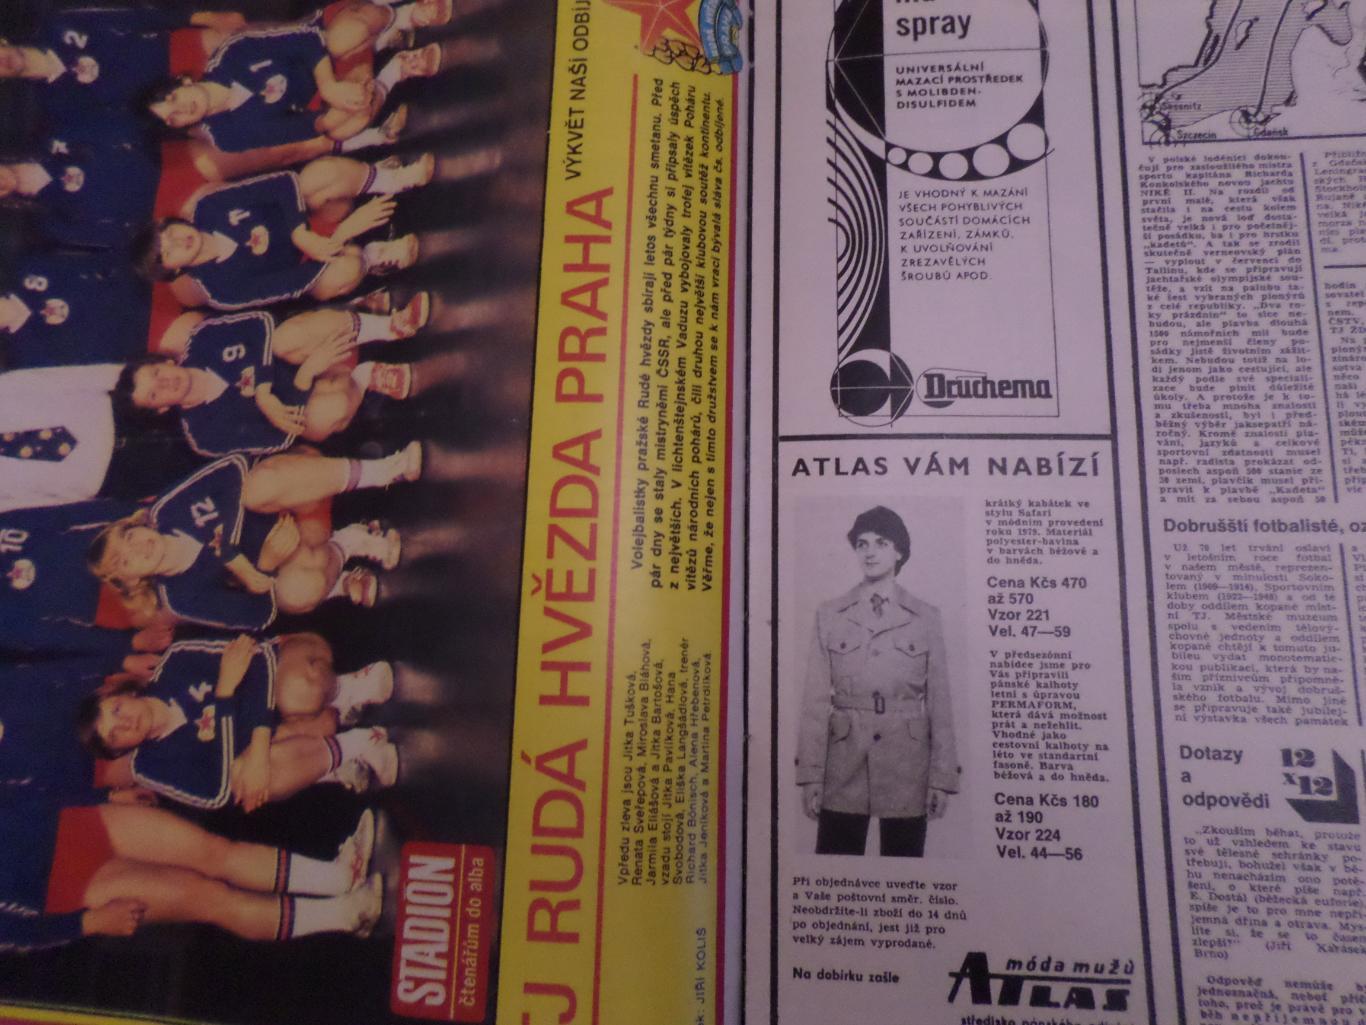 журнал Стадион Чехословакия № 15 1979 г постер Руда гвезда волейбол 1